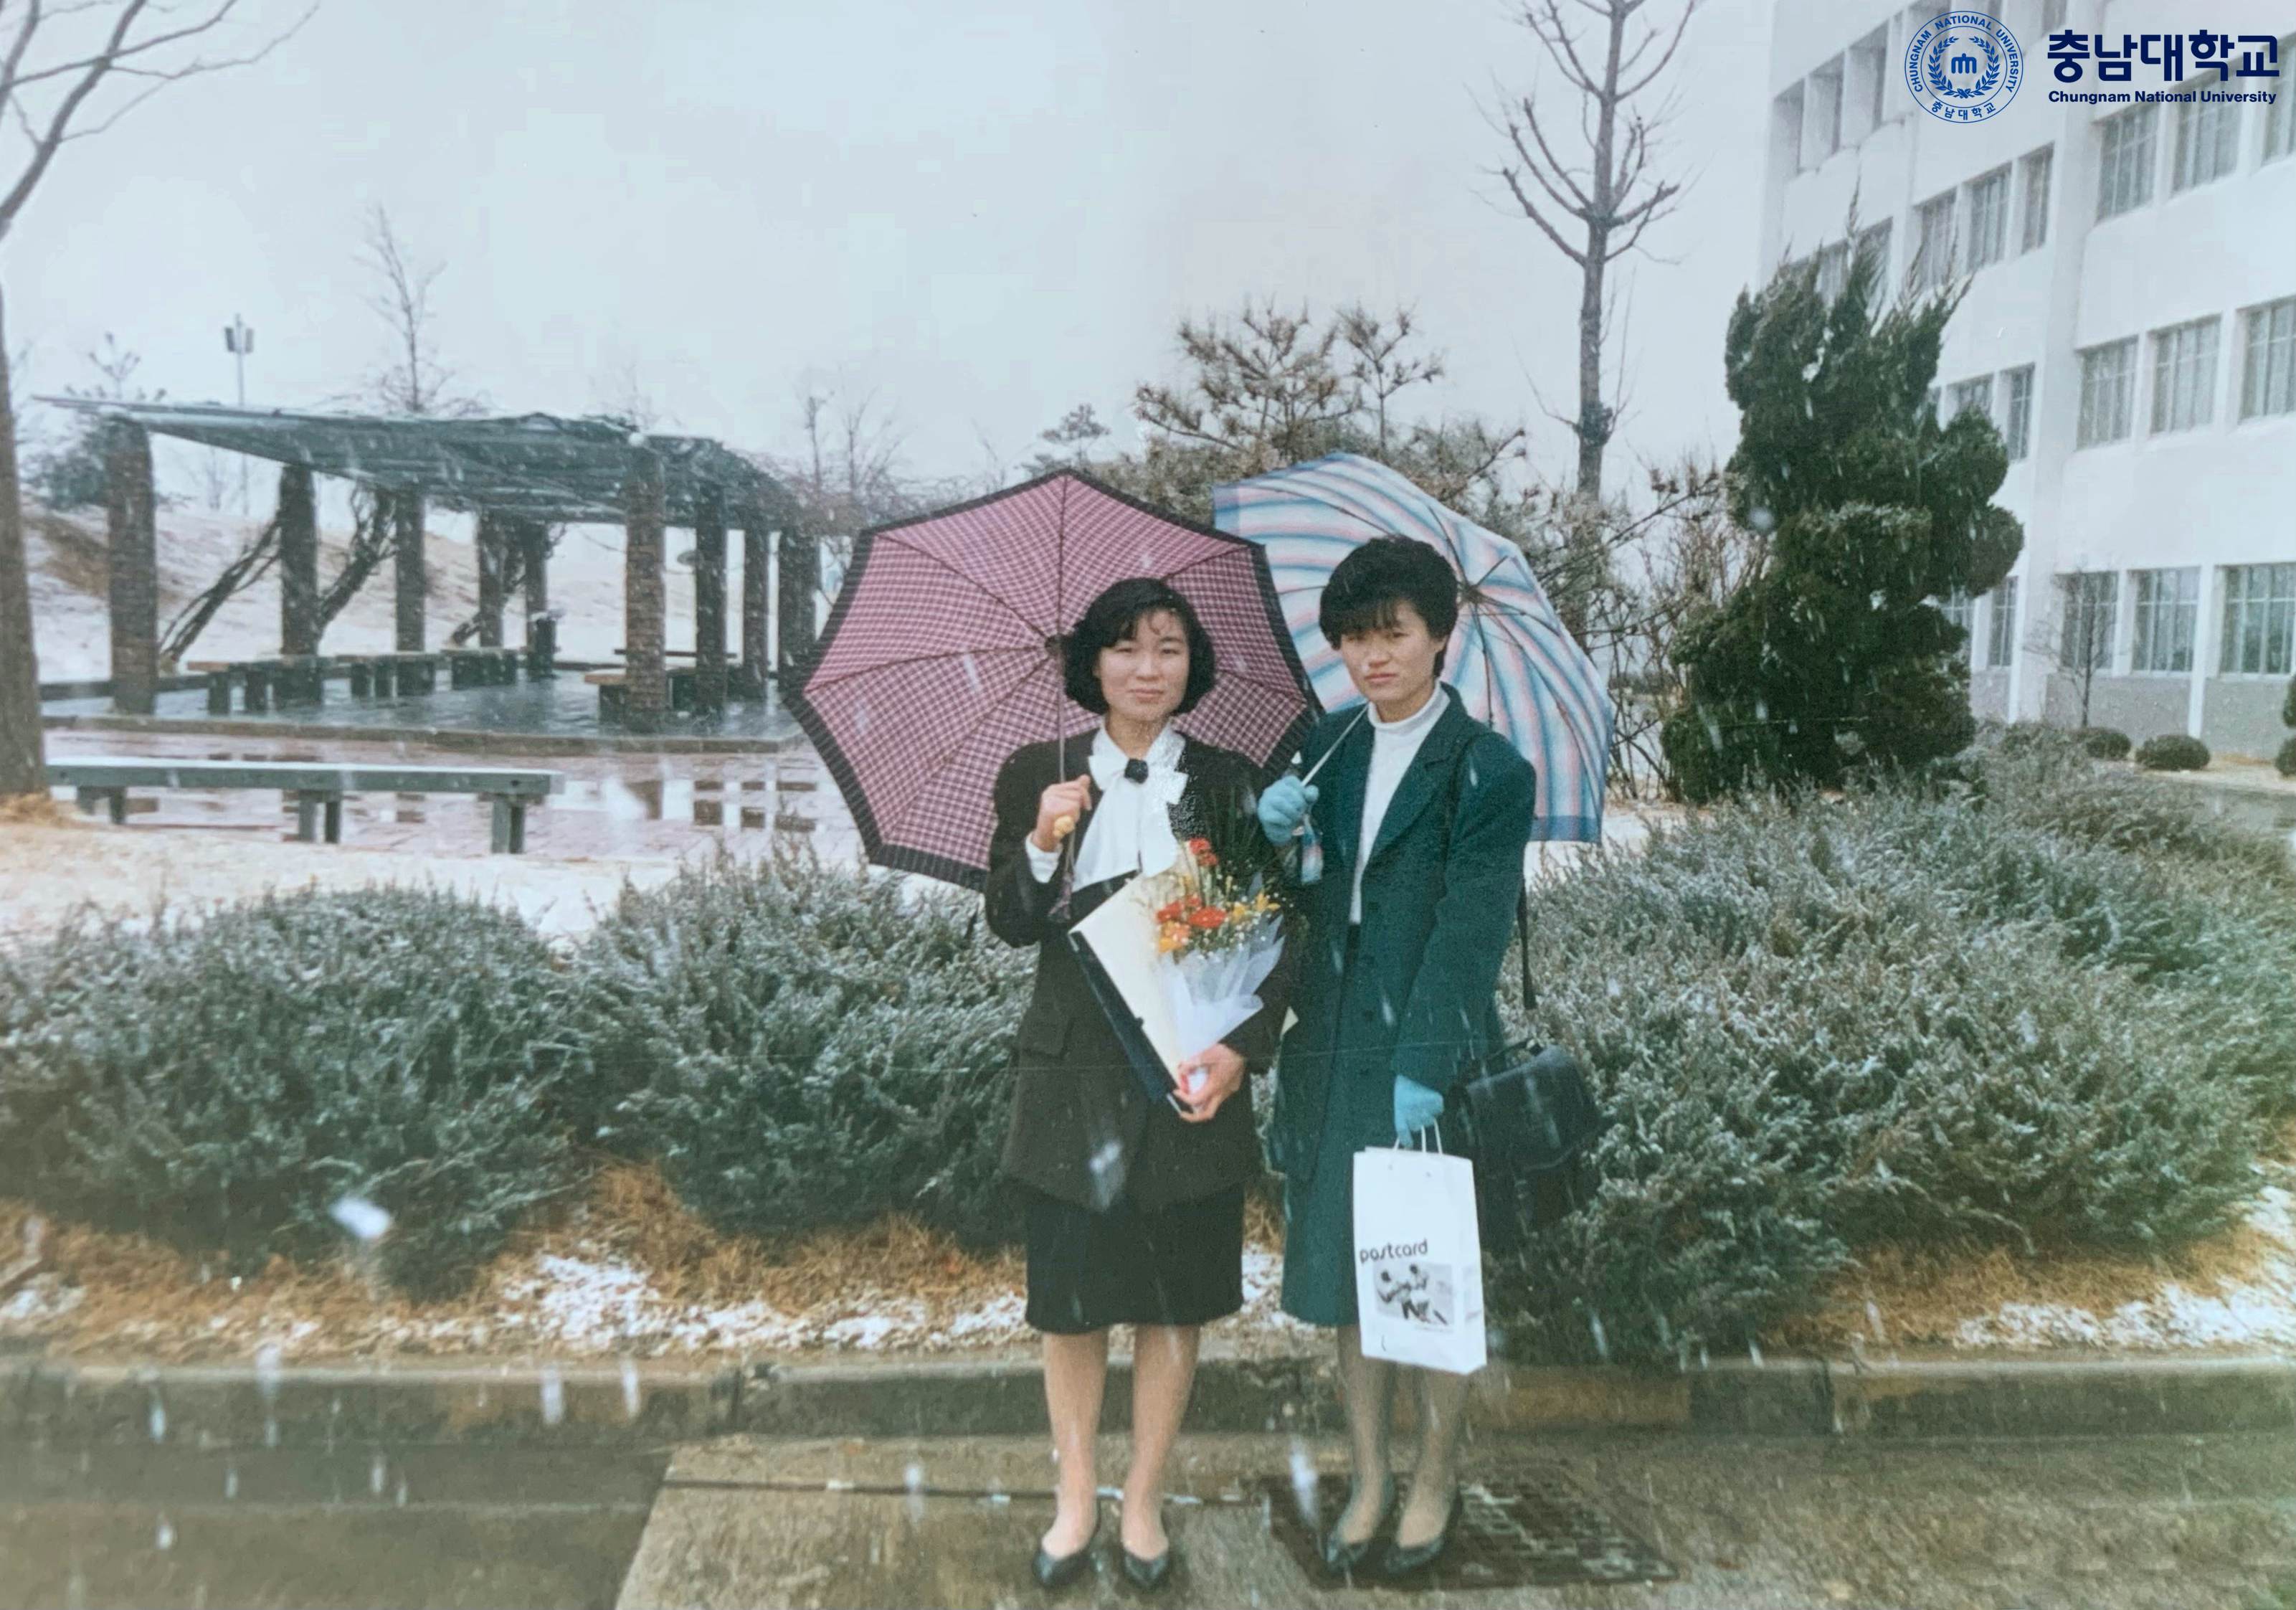 [추억 사진 공모전] 입선 - 89년, 정든 문과대를 떠나는날(1989.02.)1번사진